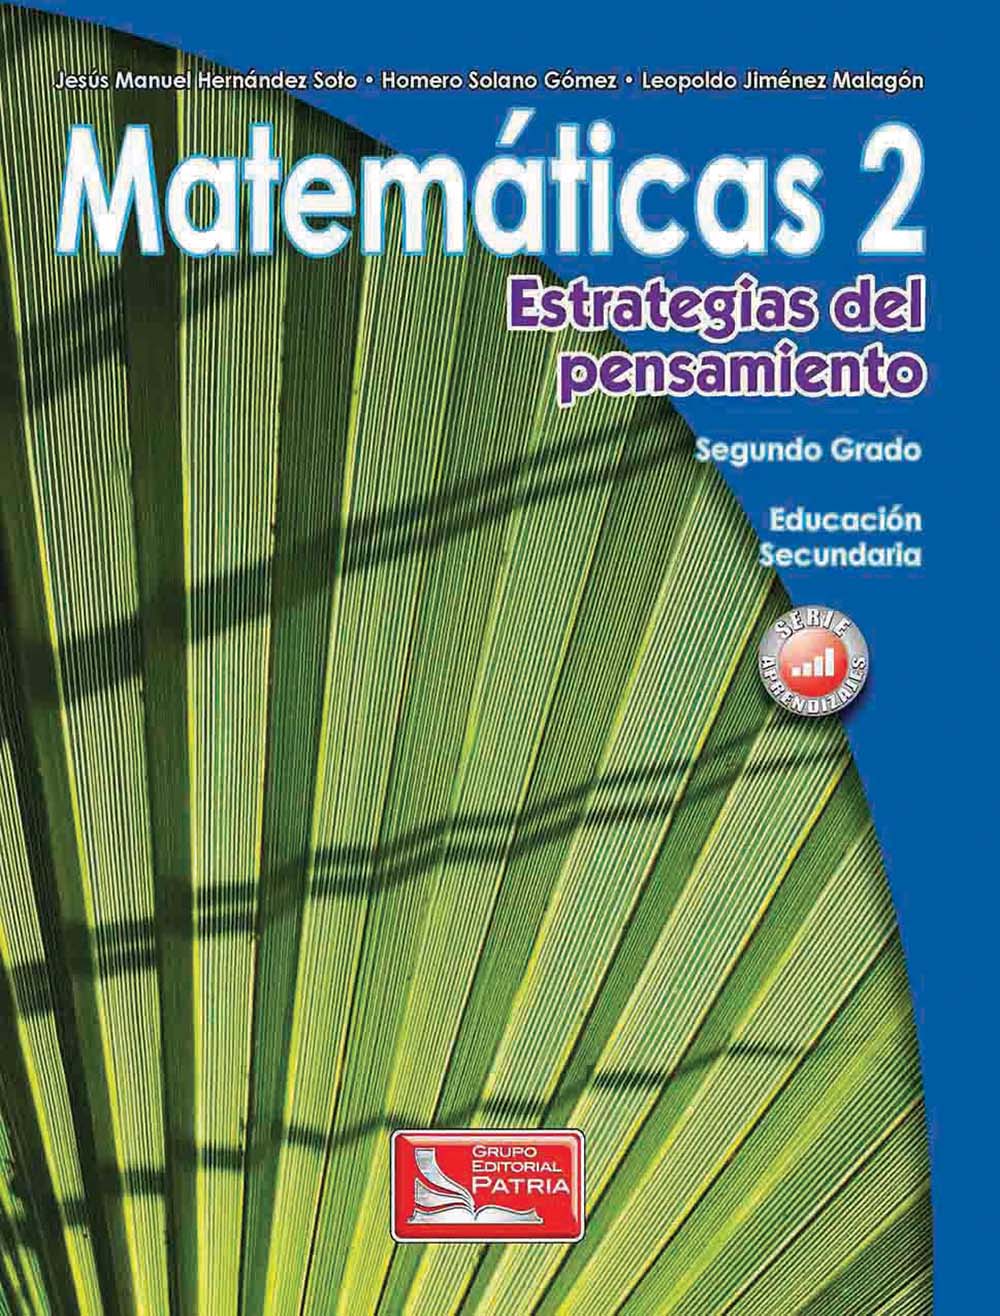 Matemáticas 2. Estrategias del pensamiento, Editorial: Grupo Editorial Patria, Nivel: Secundaria, Grado: 2